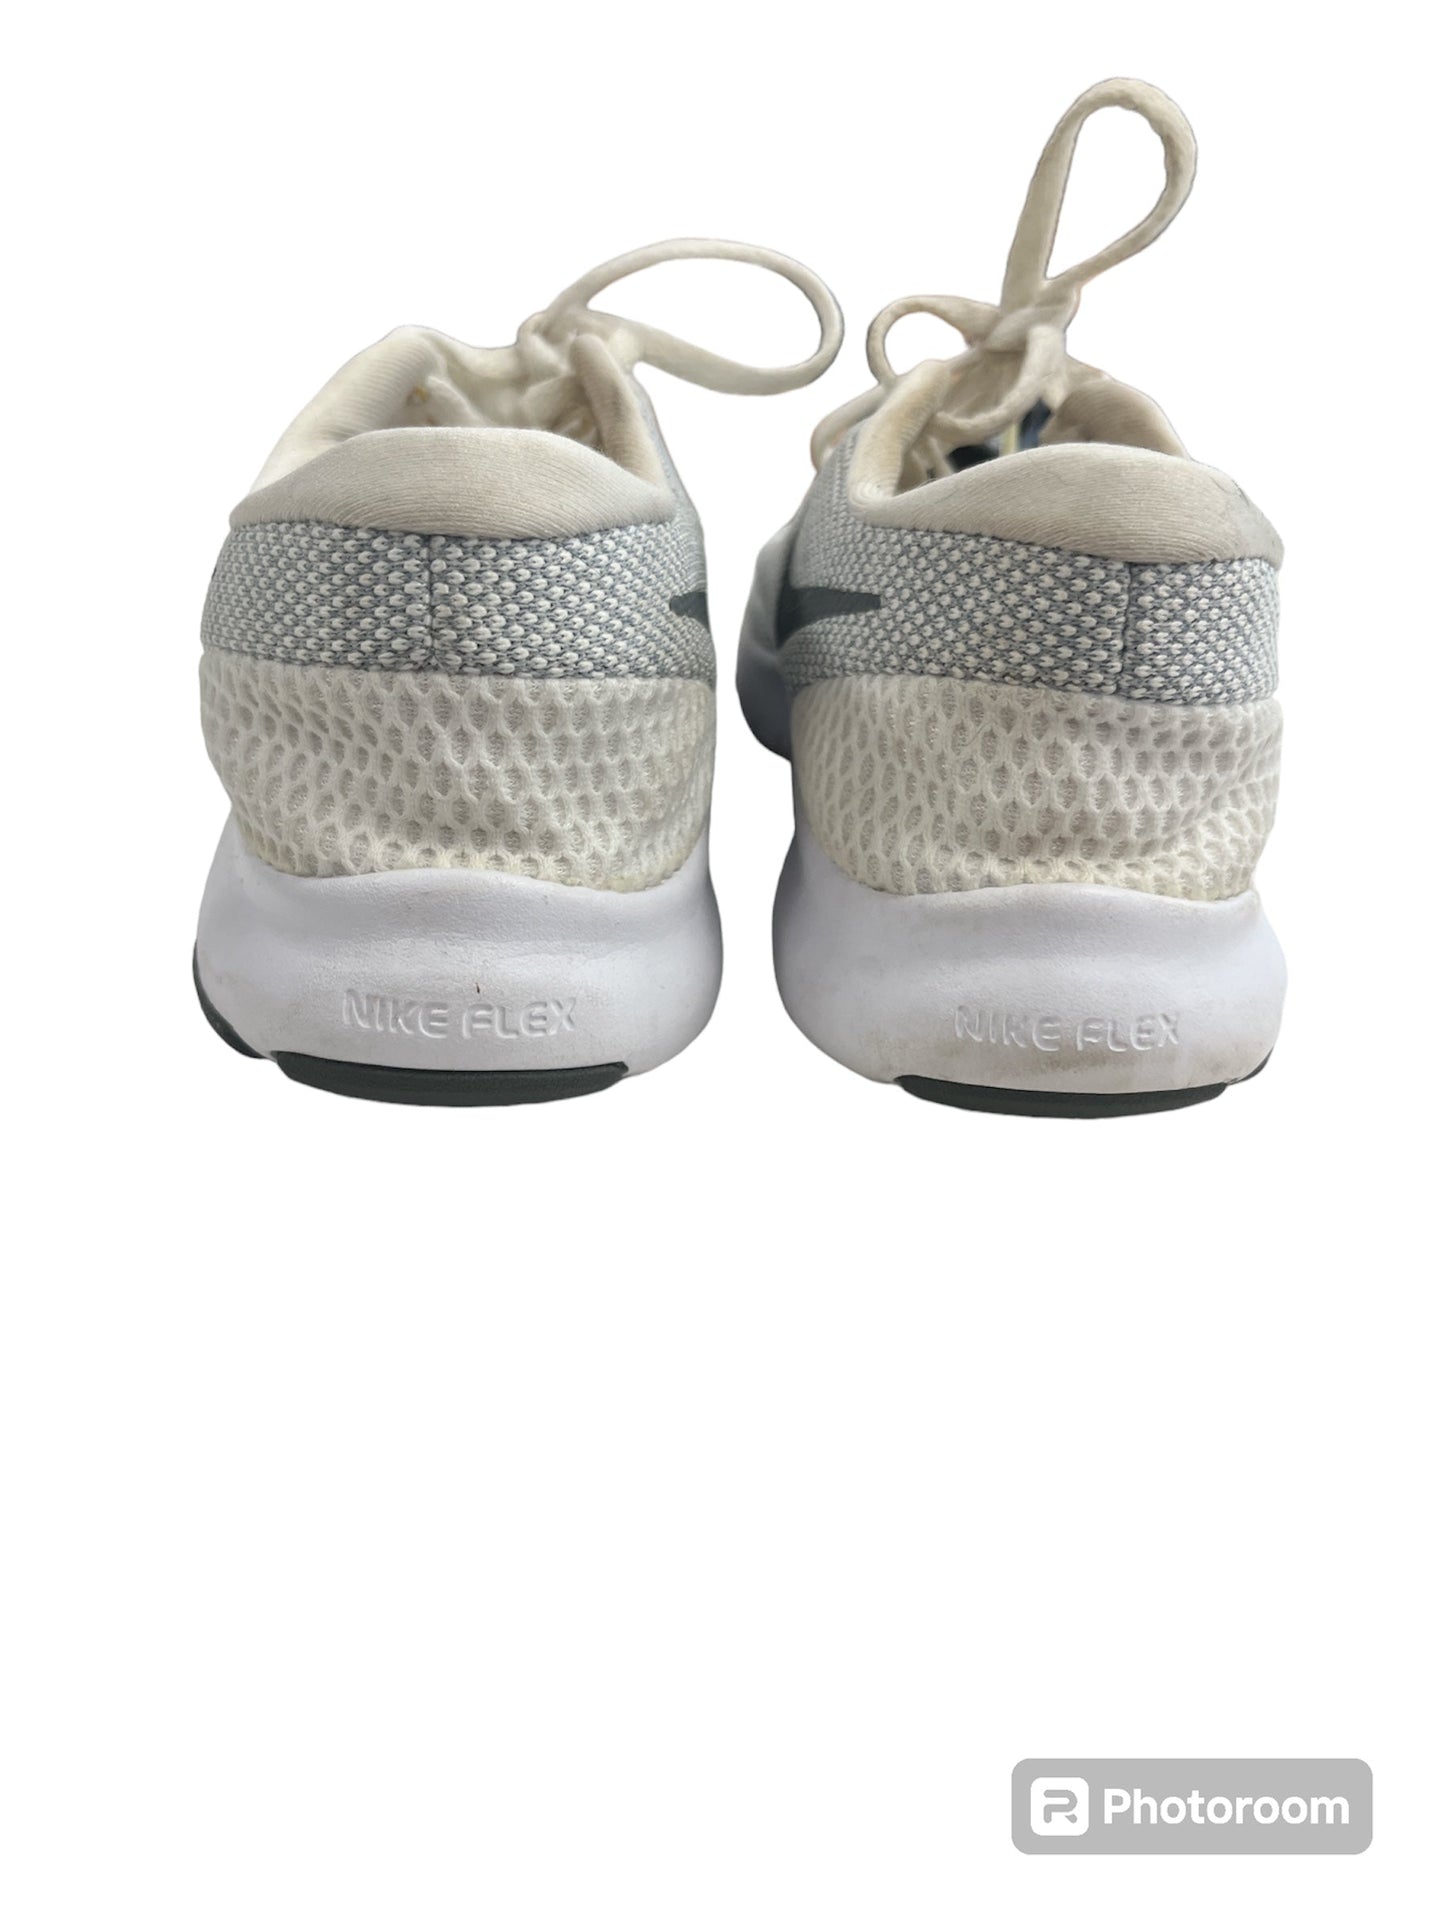 White Shoes Athletic Nike, Size 8